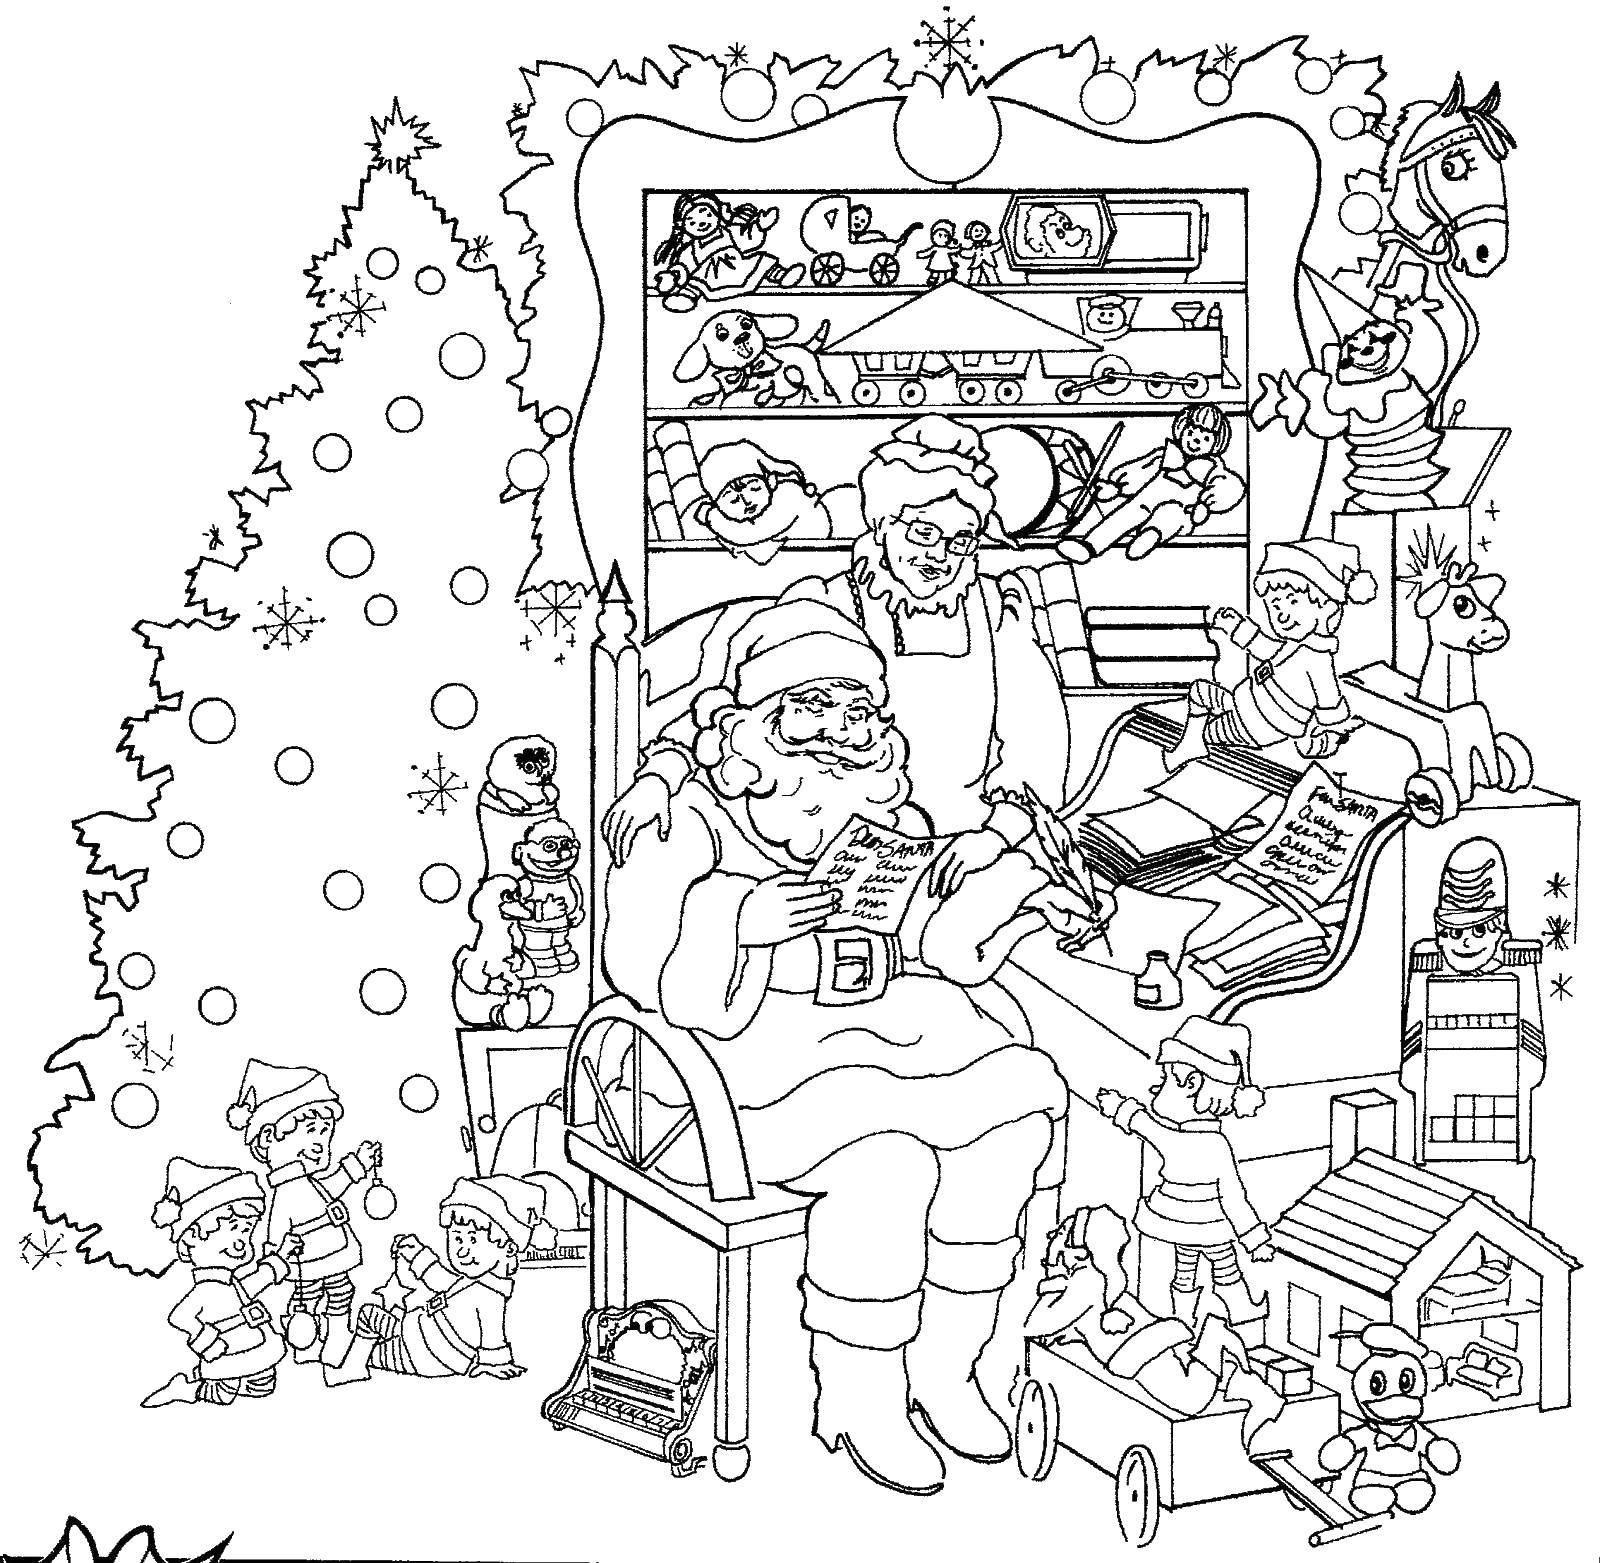 Розмальовки  Санта клаус і його дружина. Завантажити розмальовку Санта Клаус, різдво.  Роздрукувати ,різдво,